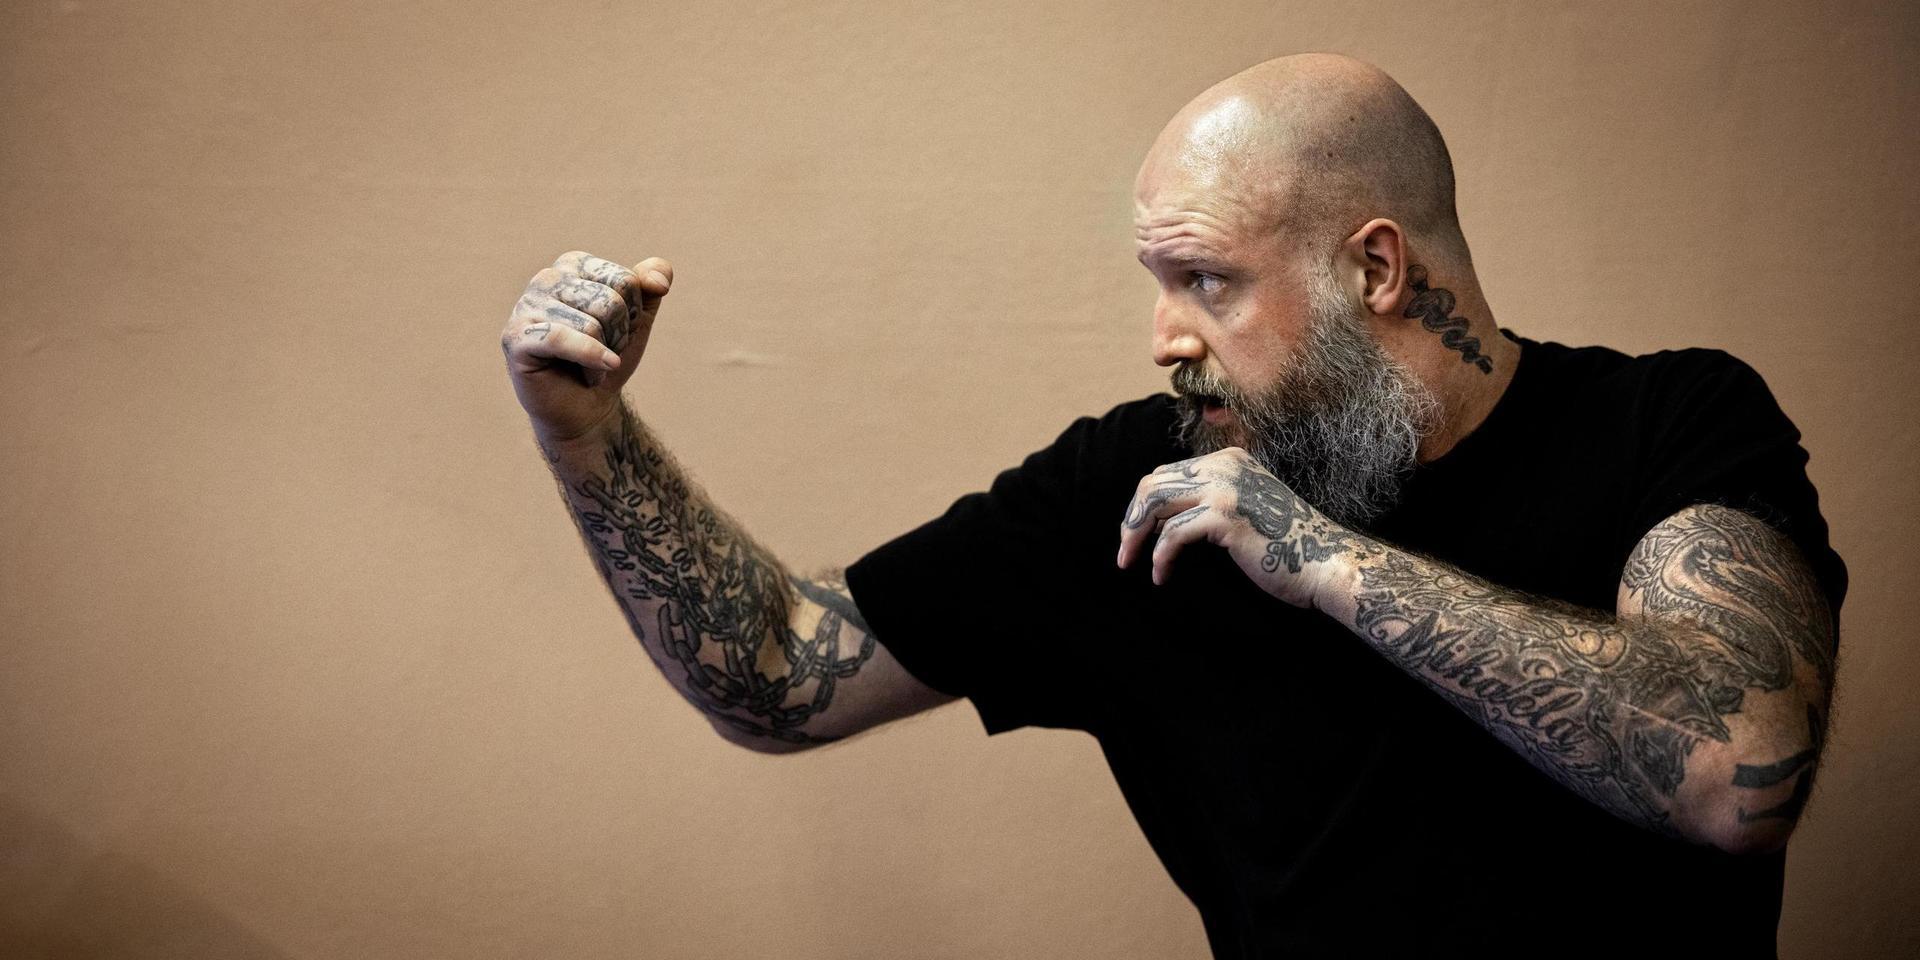 Björn Rudman har tre svarta bälten i kickboxning och driver stress- och smärtrehabföretaget Caladrius.